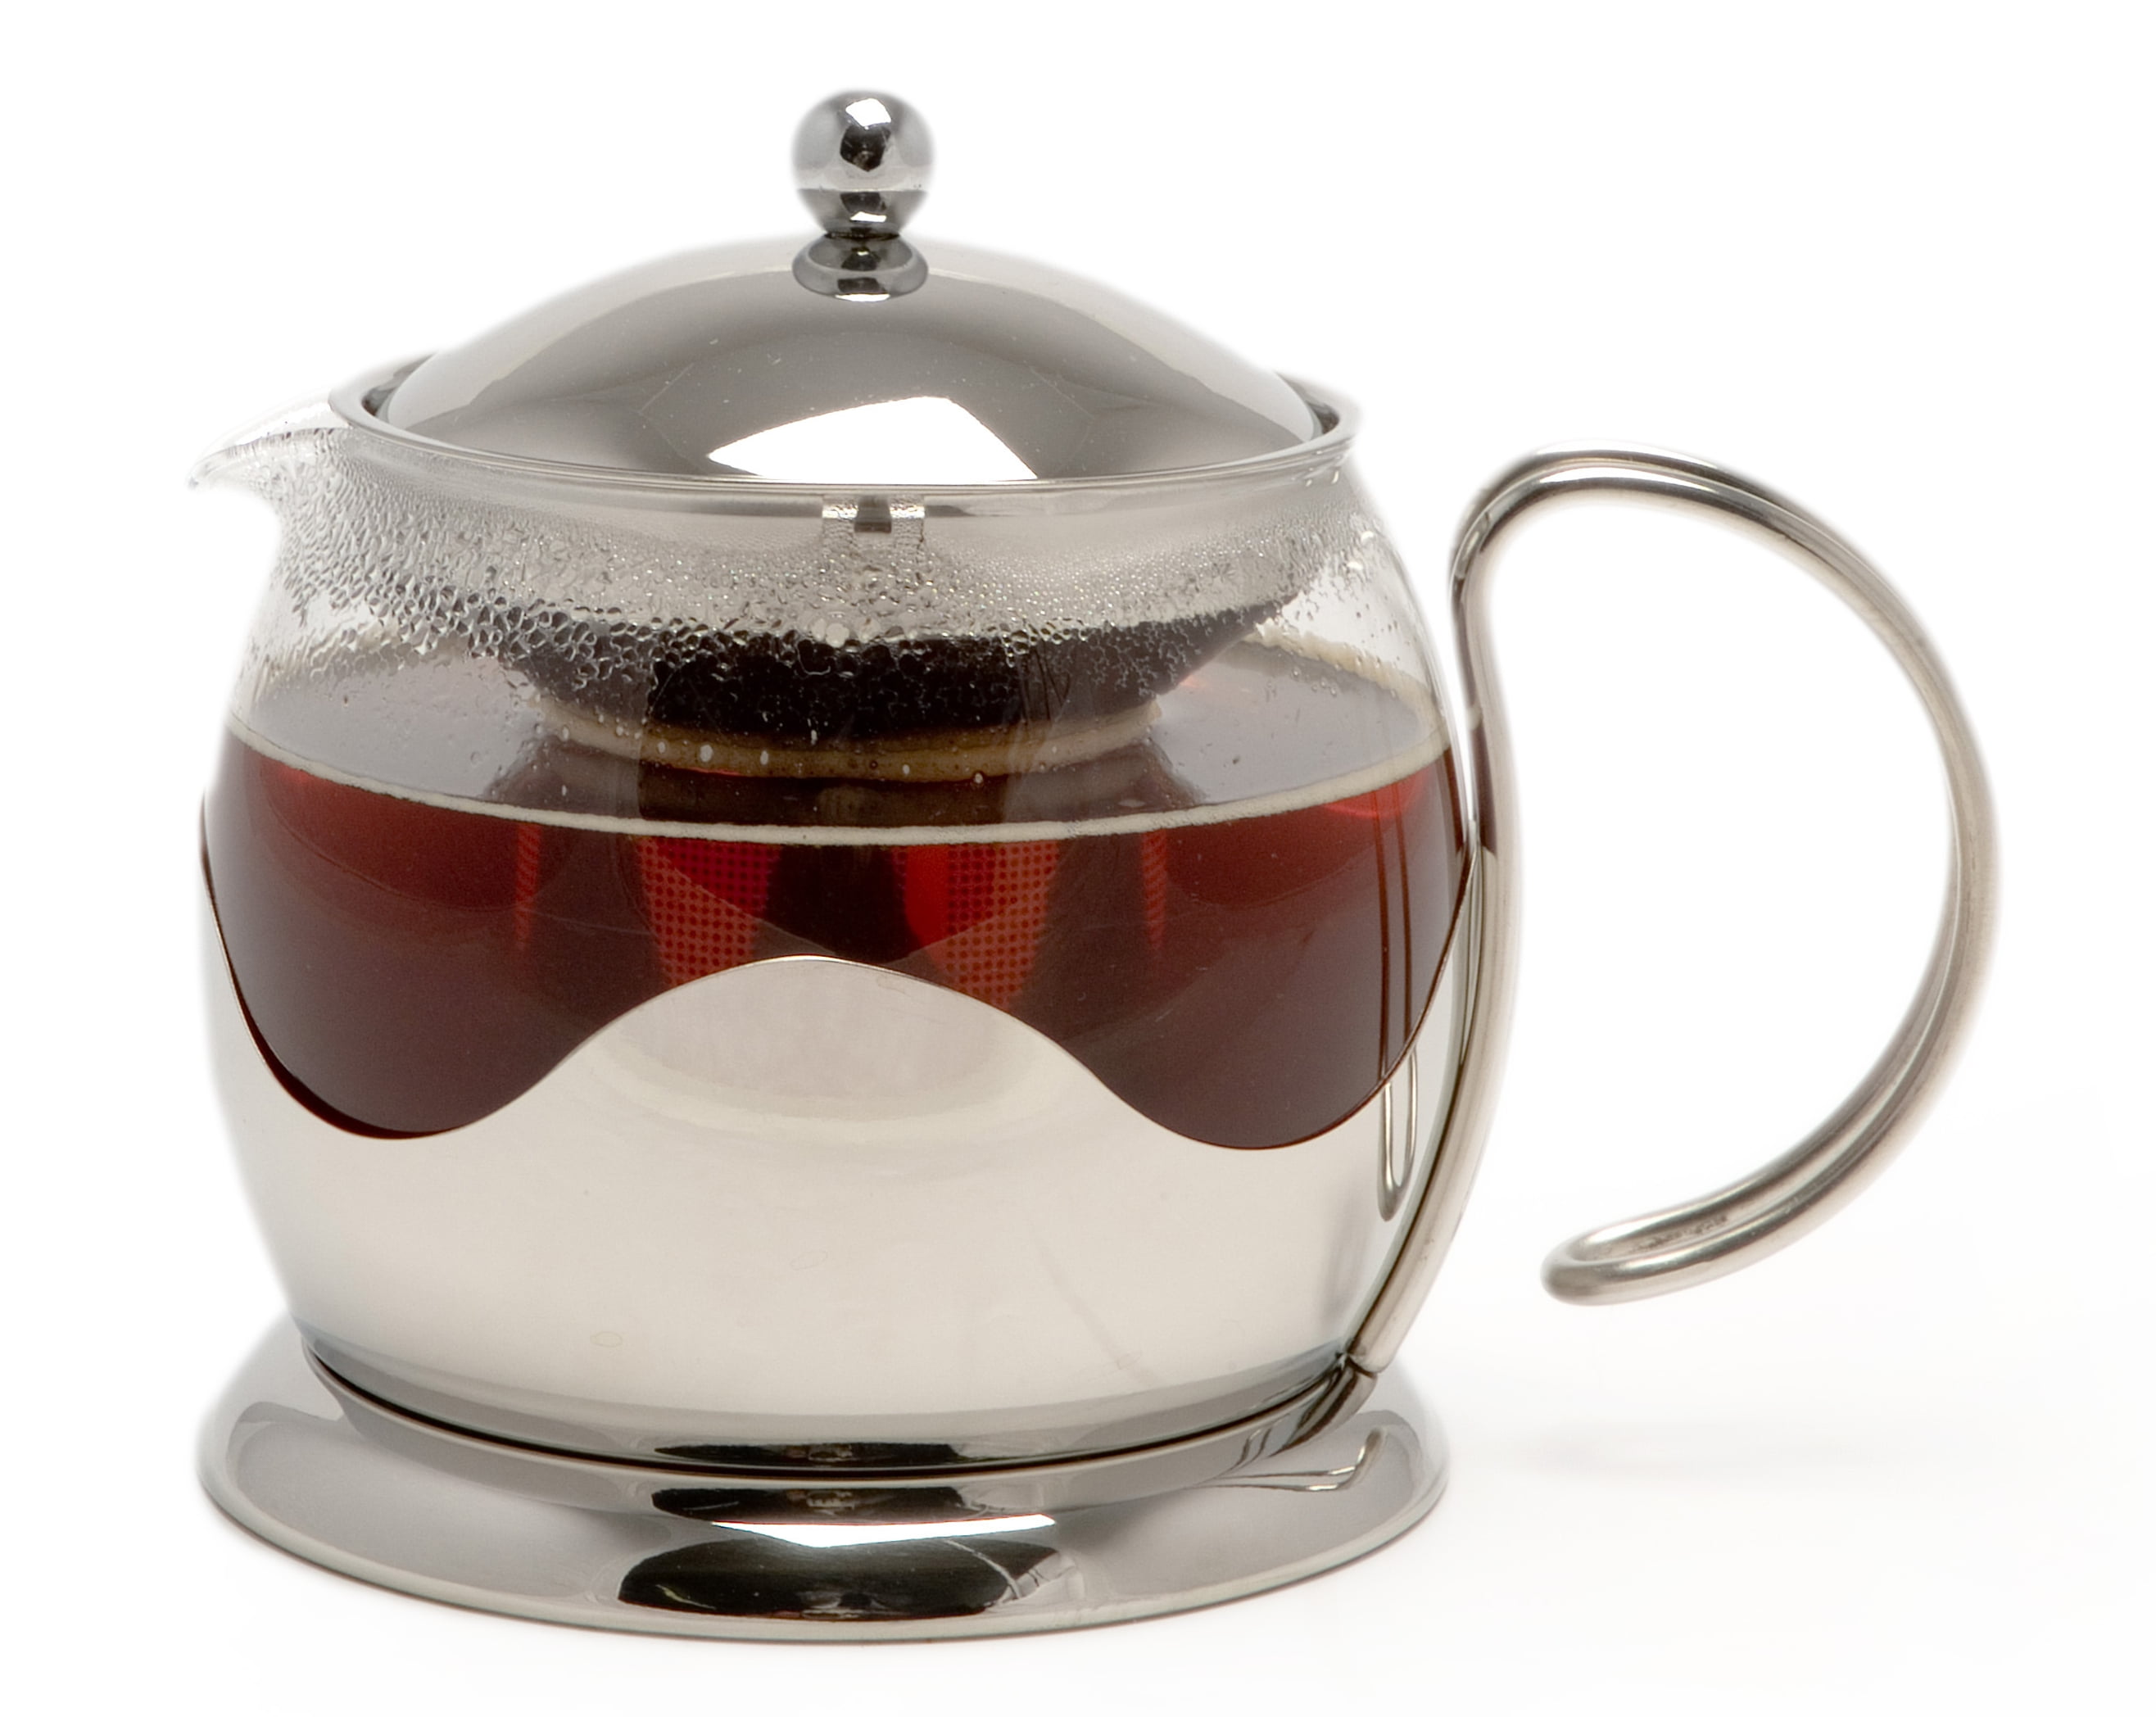 La Cafetiere Stainless Steel Le Teapot 4 Cup Teapot